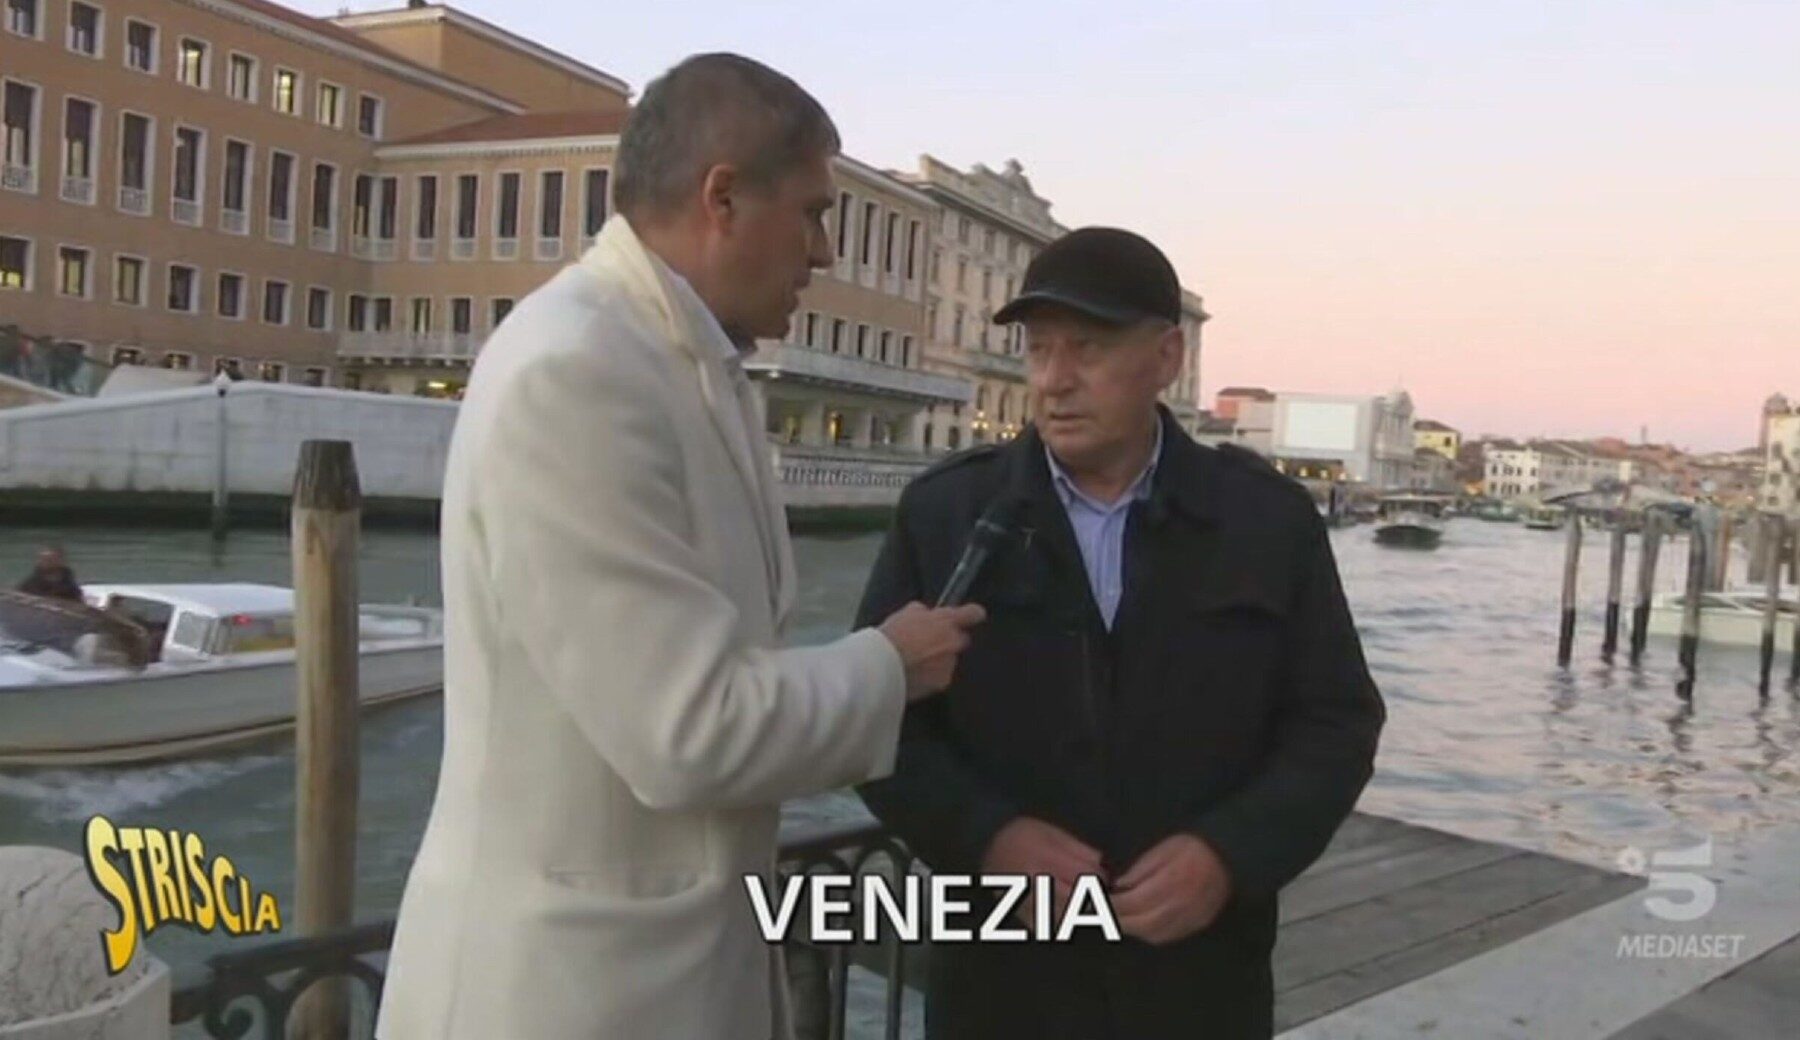 Borseggiatrici di Milano in trasferta a Venezia: fermate (ma sono già libere, come Striscia racconta da tempo)